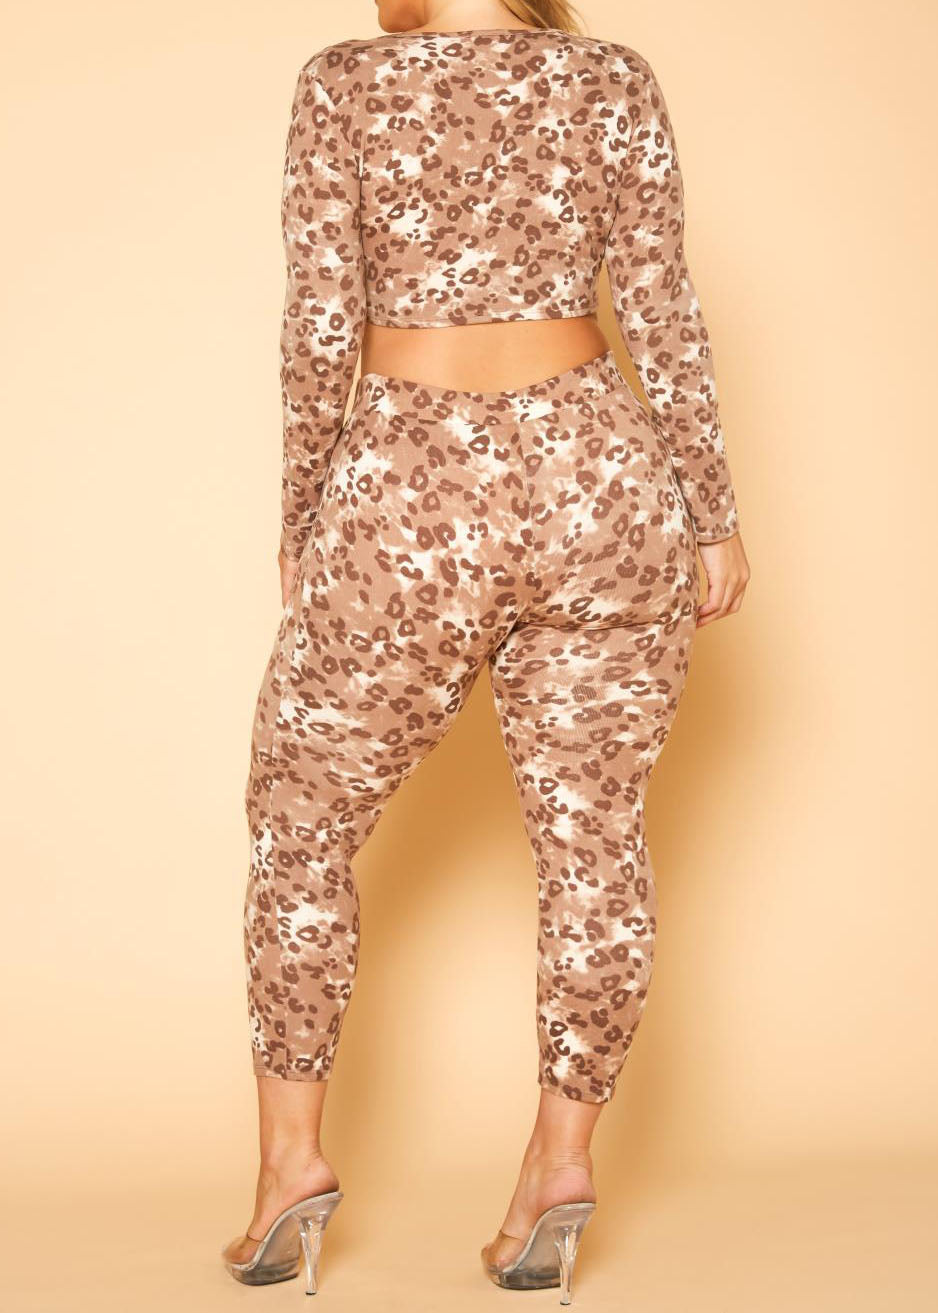 HI Curvy Plus Size Women Leopard Print Tie Front Crop Top & Leggings Sets